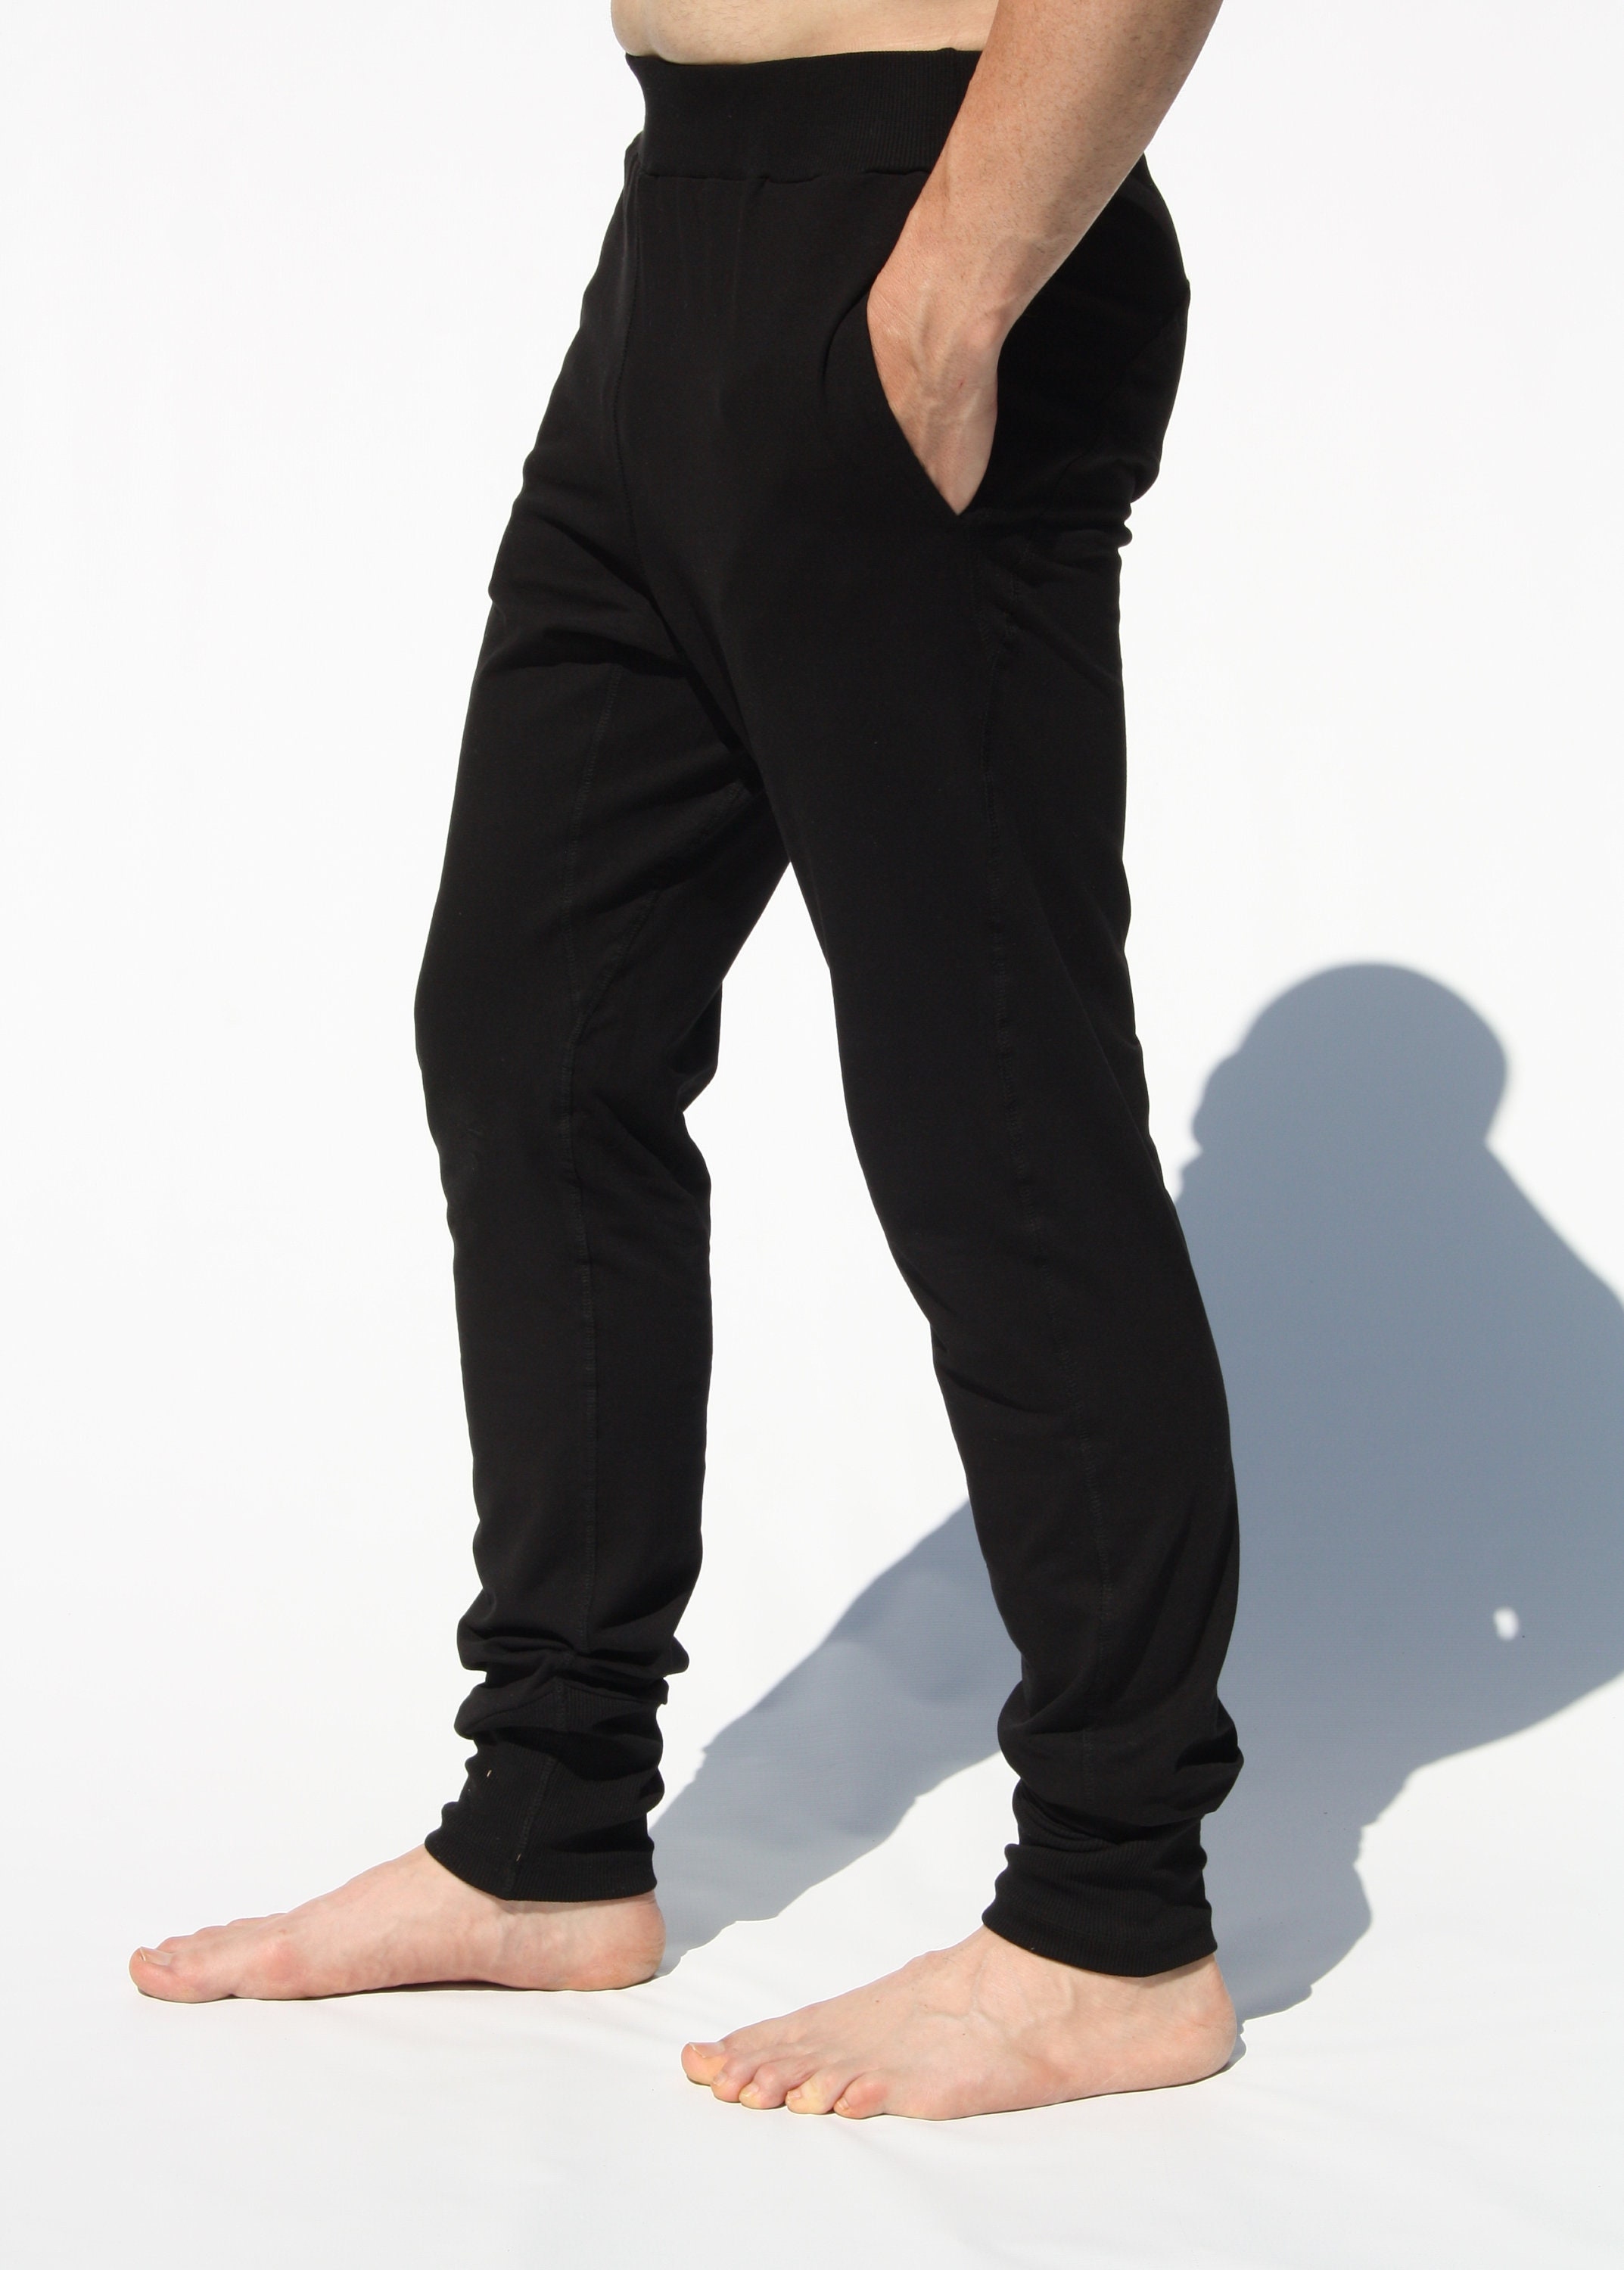 Pantalon de yoga para hombre. Tejido de calidad y agradable al tacto.  Comodos y resistentes a las exigencias del entrenamiento. Unisex -   México